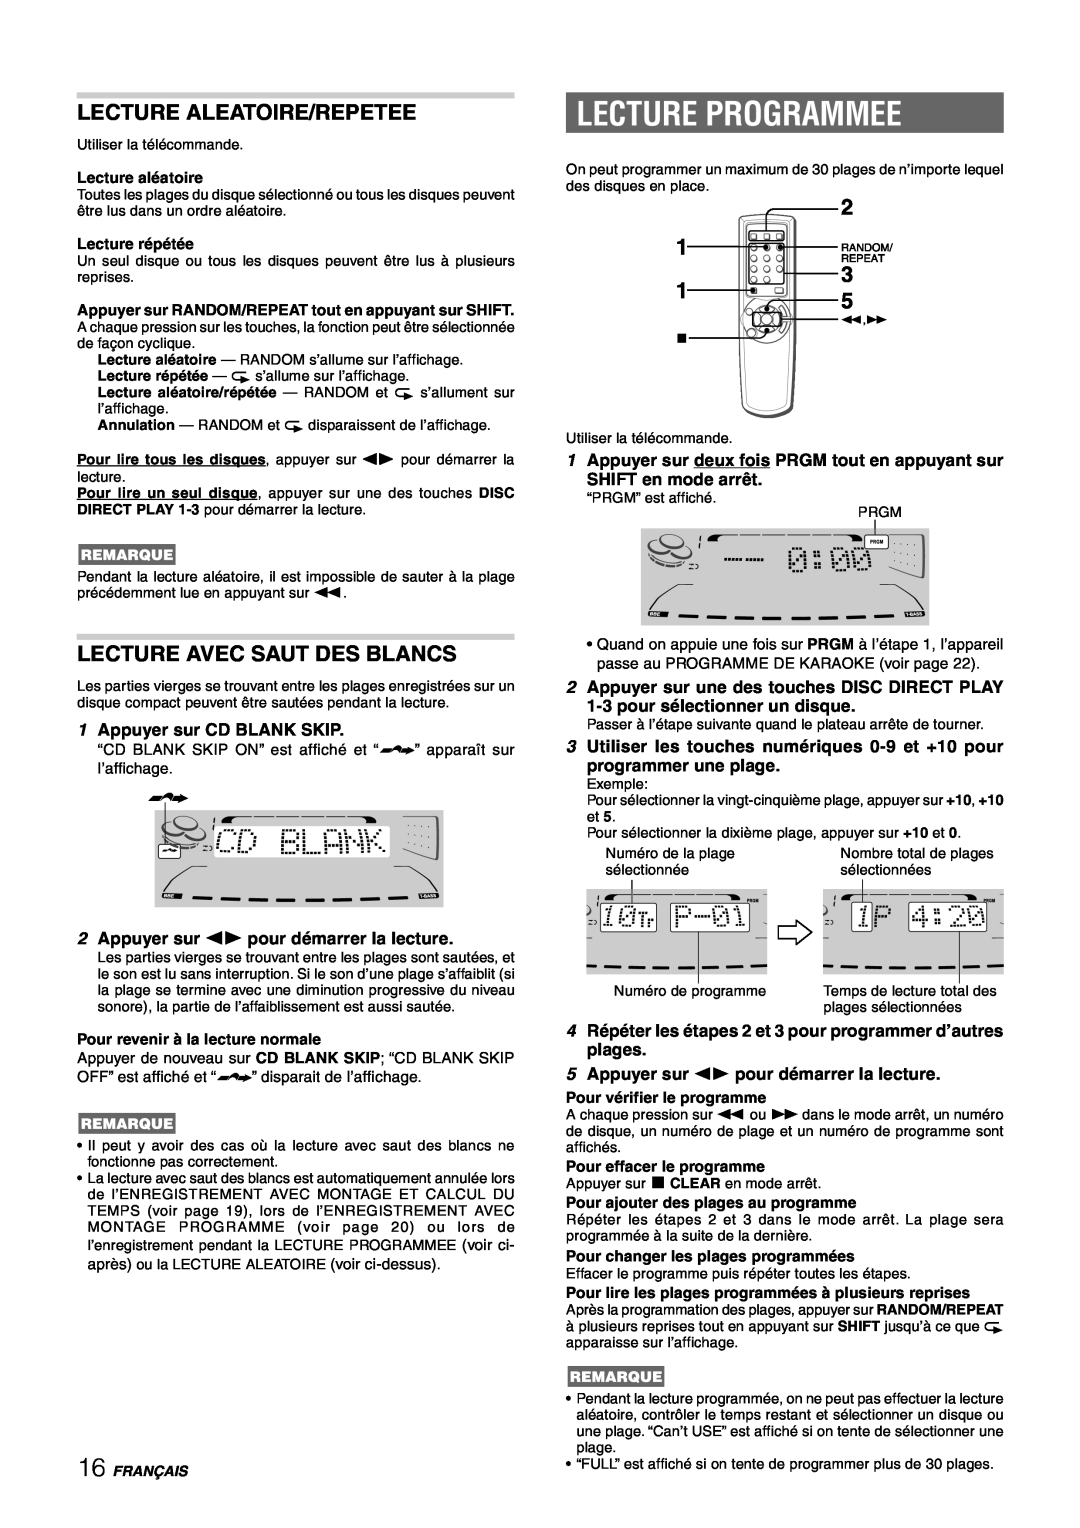 Sony NSX-AJ80 manual Lecture Programmee, Lecture Aleatoire/Repetee, Lecture Avec Saut Des Blancs, SHIFT en mode arrêt 